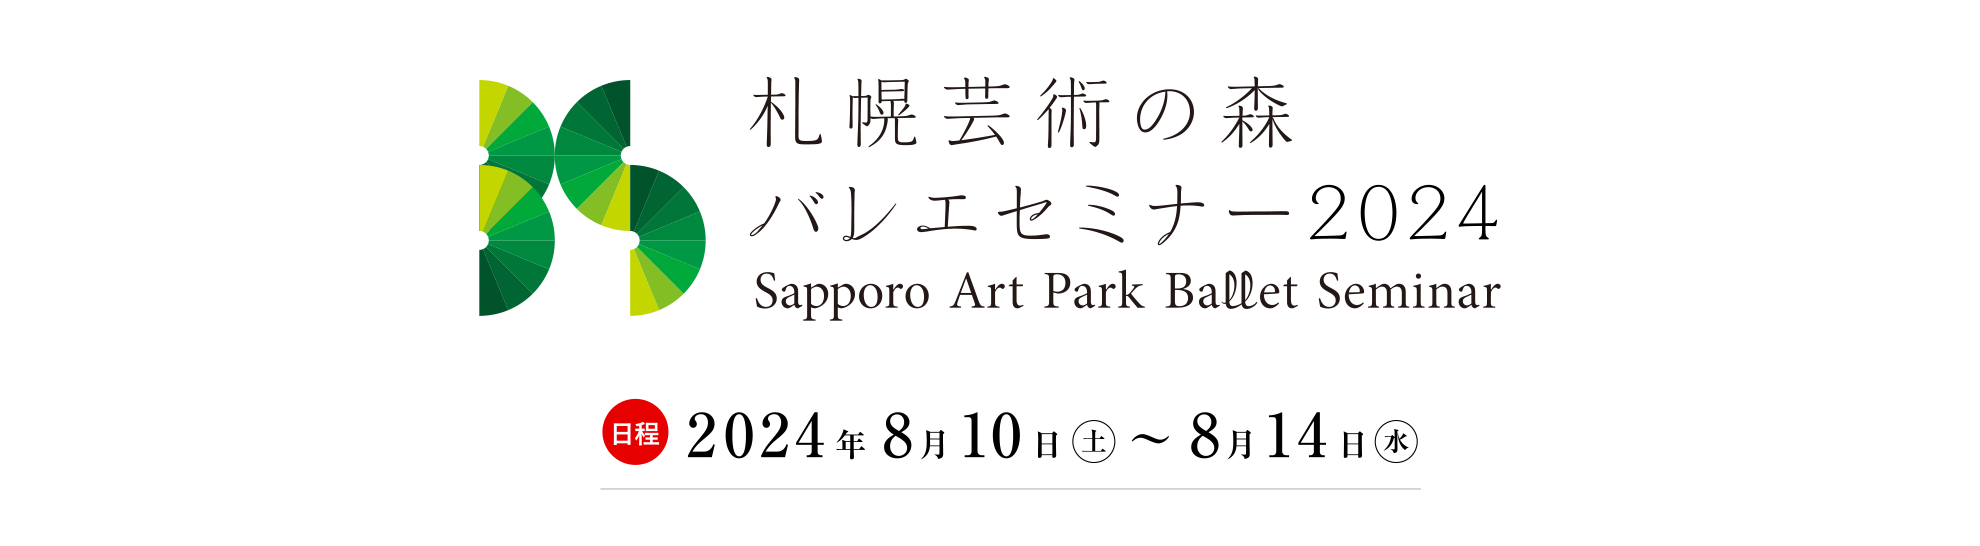 札幌芸術の森 バレエセミナー2024